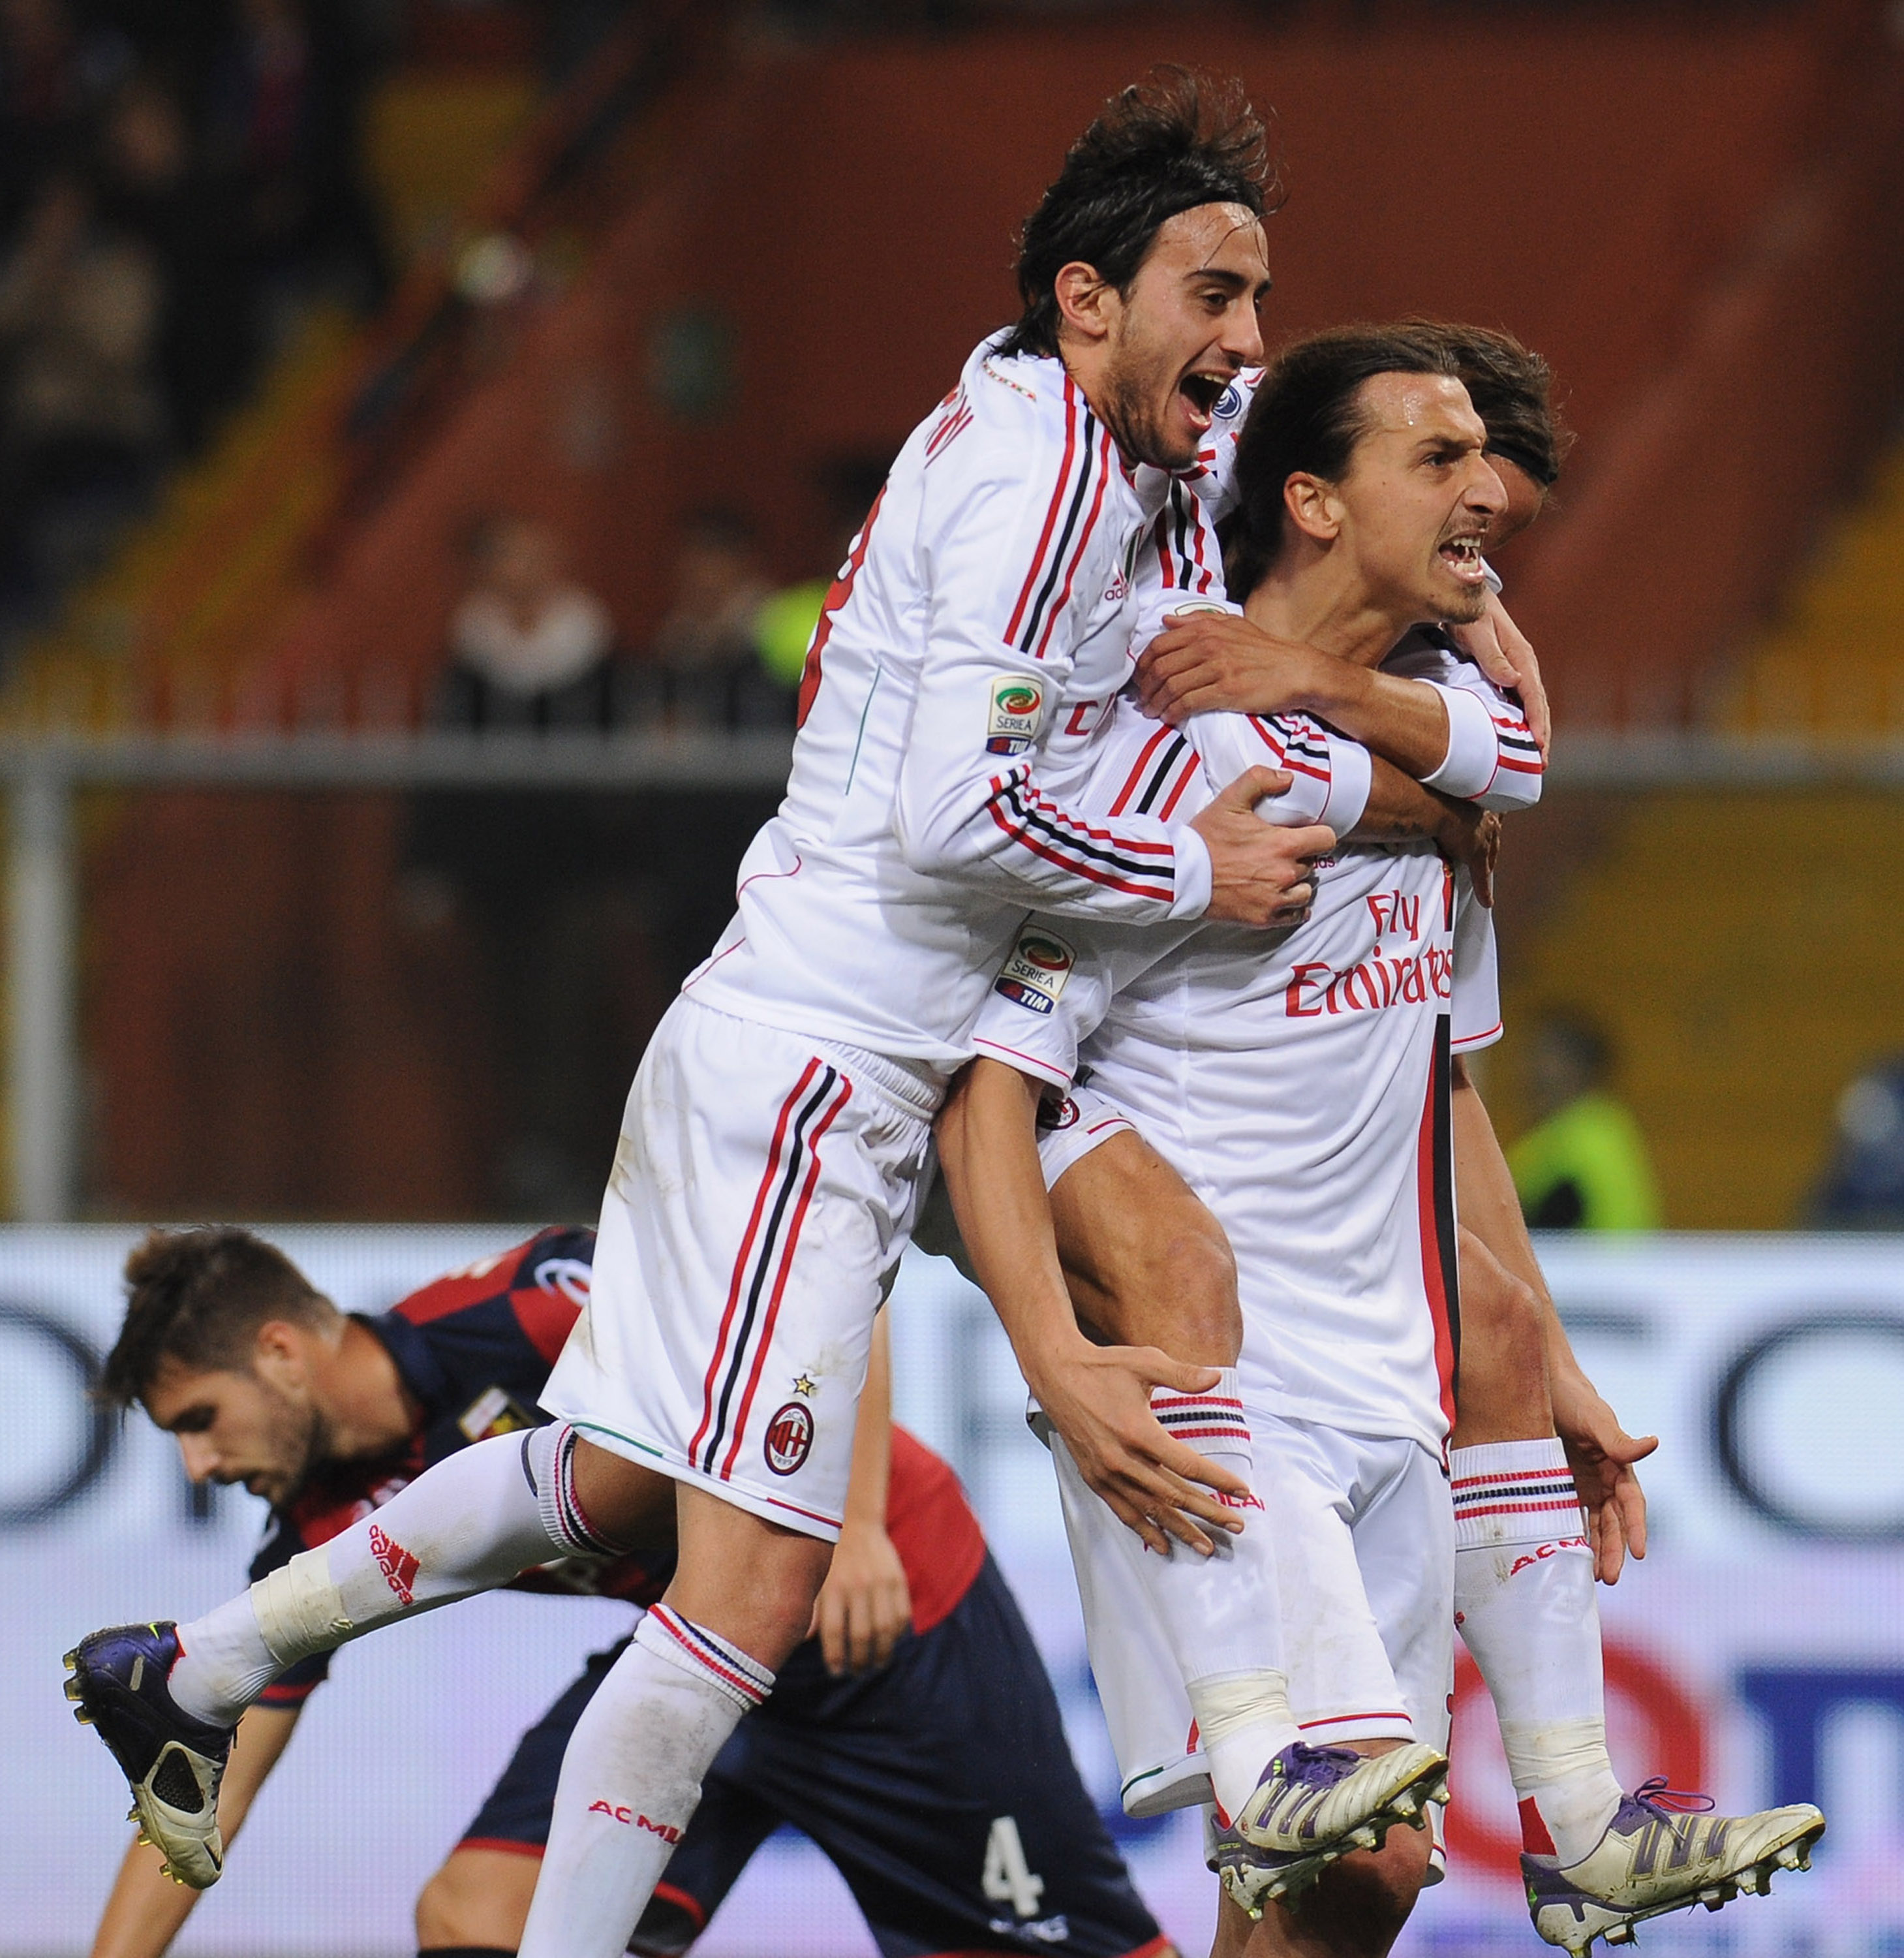 I den trettonde omgången mötte Milan Genoa borta. Zlatans målkalas fortsatte. Han gjorde 0-1-målet i en match som slutade 0-2 till det gästande laget.